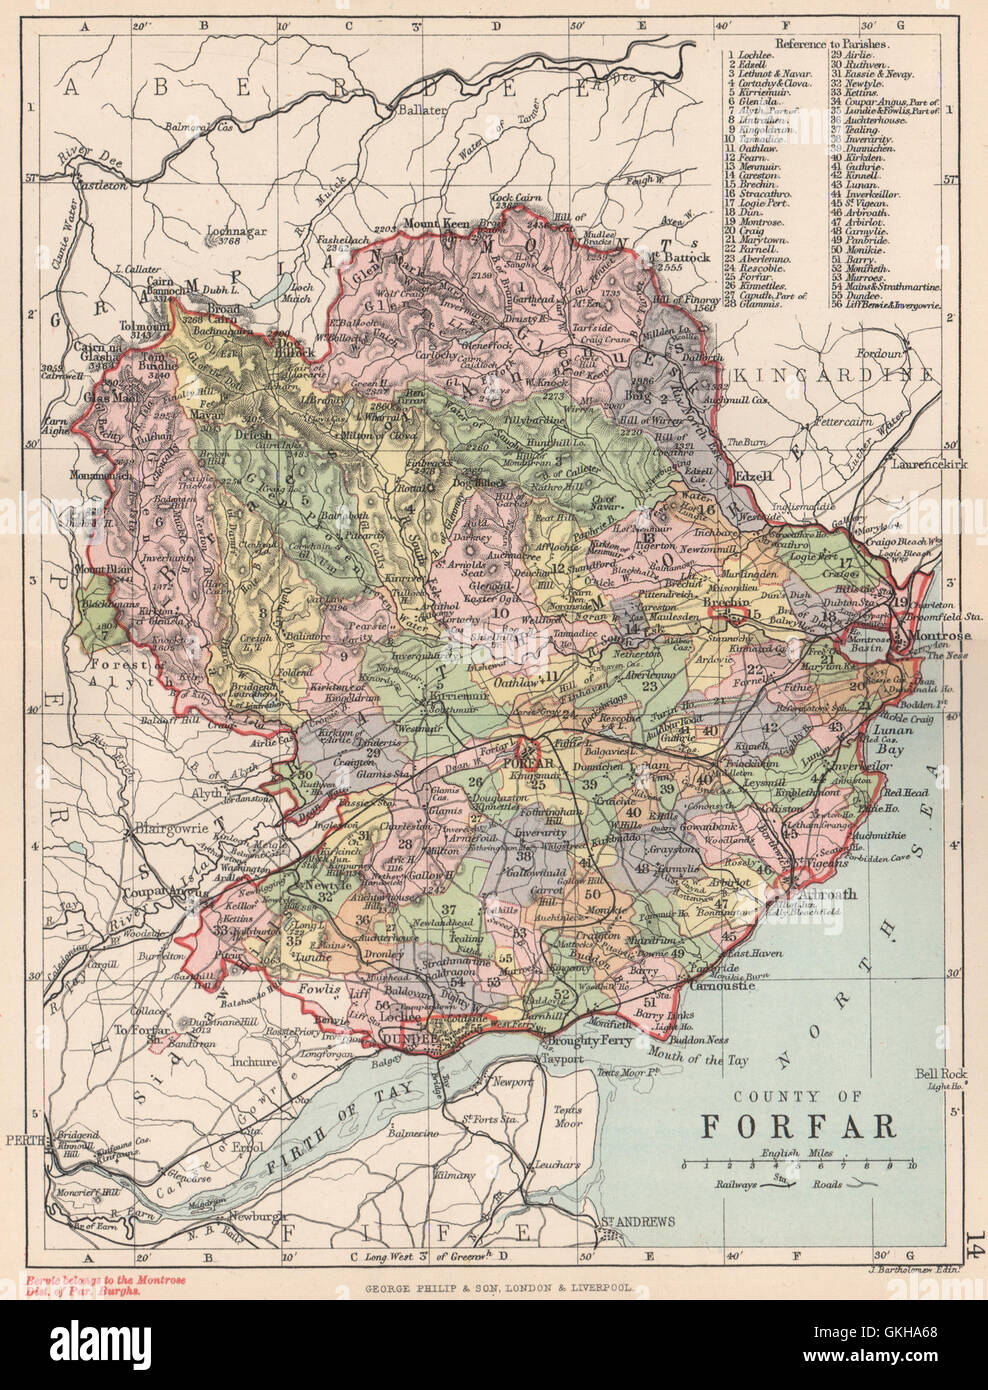 County Of Forfar Forfarshire Parishes Bartholomew 1891 Antique Map GKHA68 